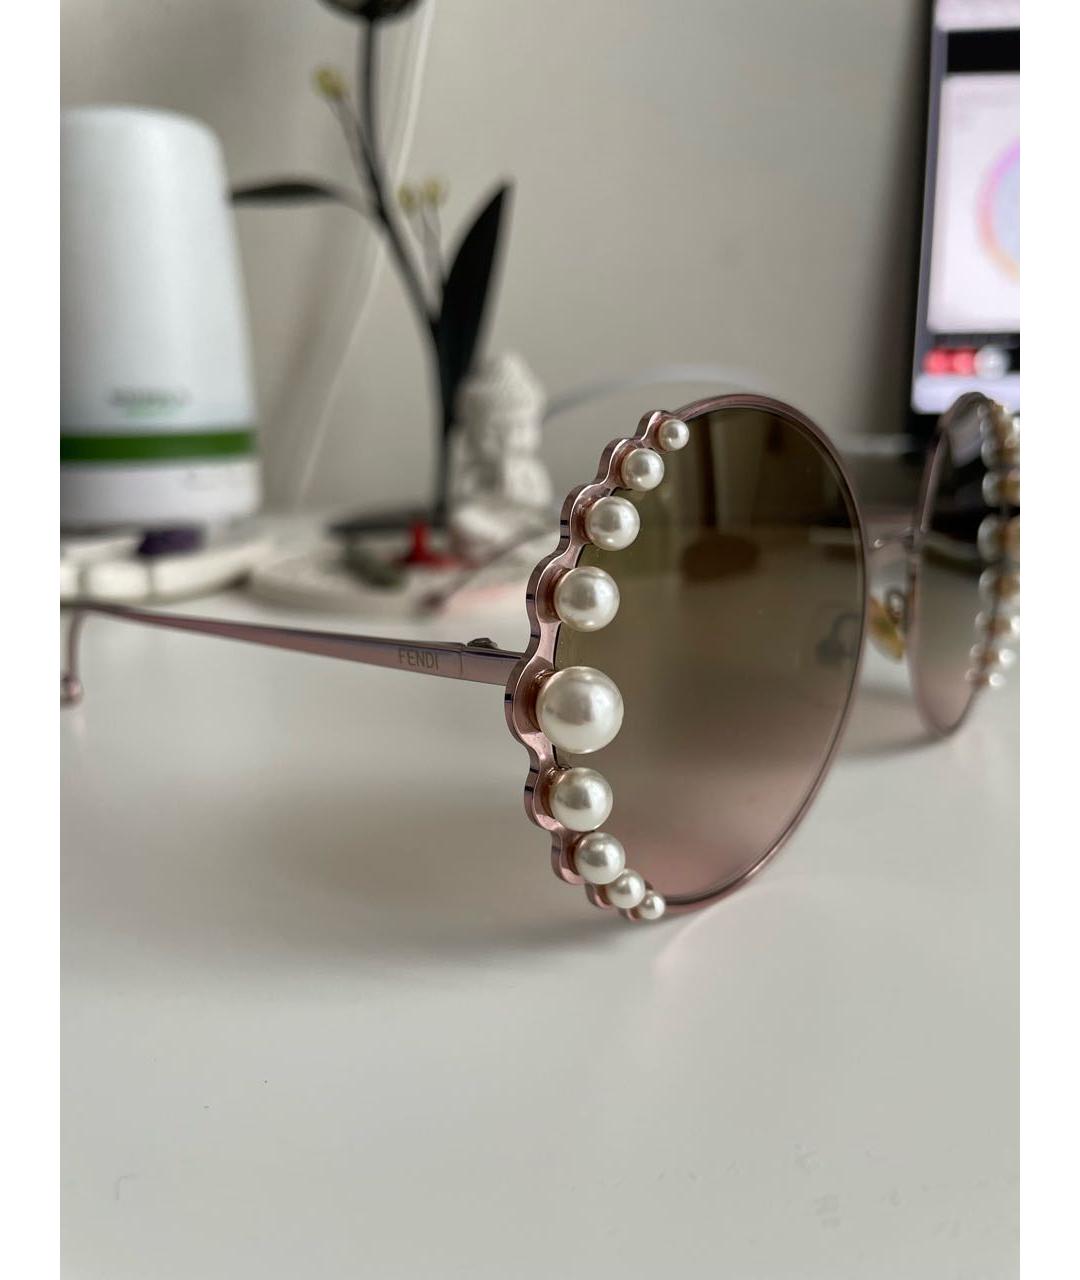 FENDI Розовые металлические солнцезащитные очки, фото 2